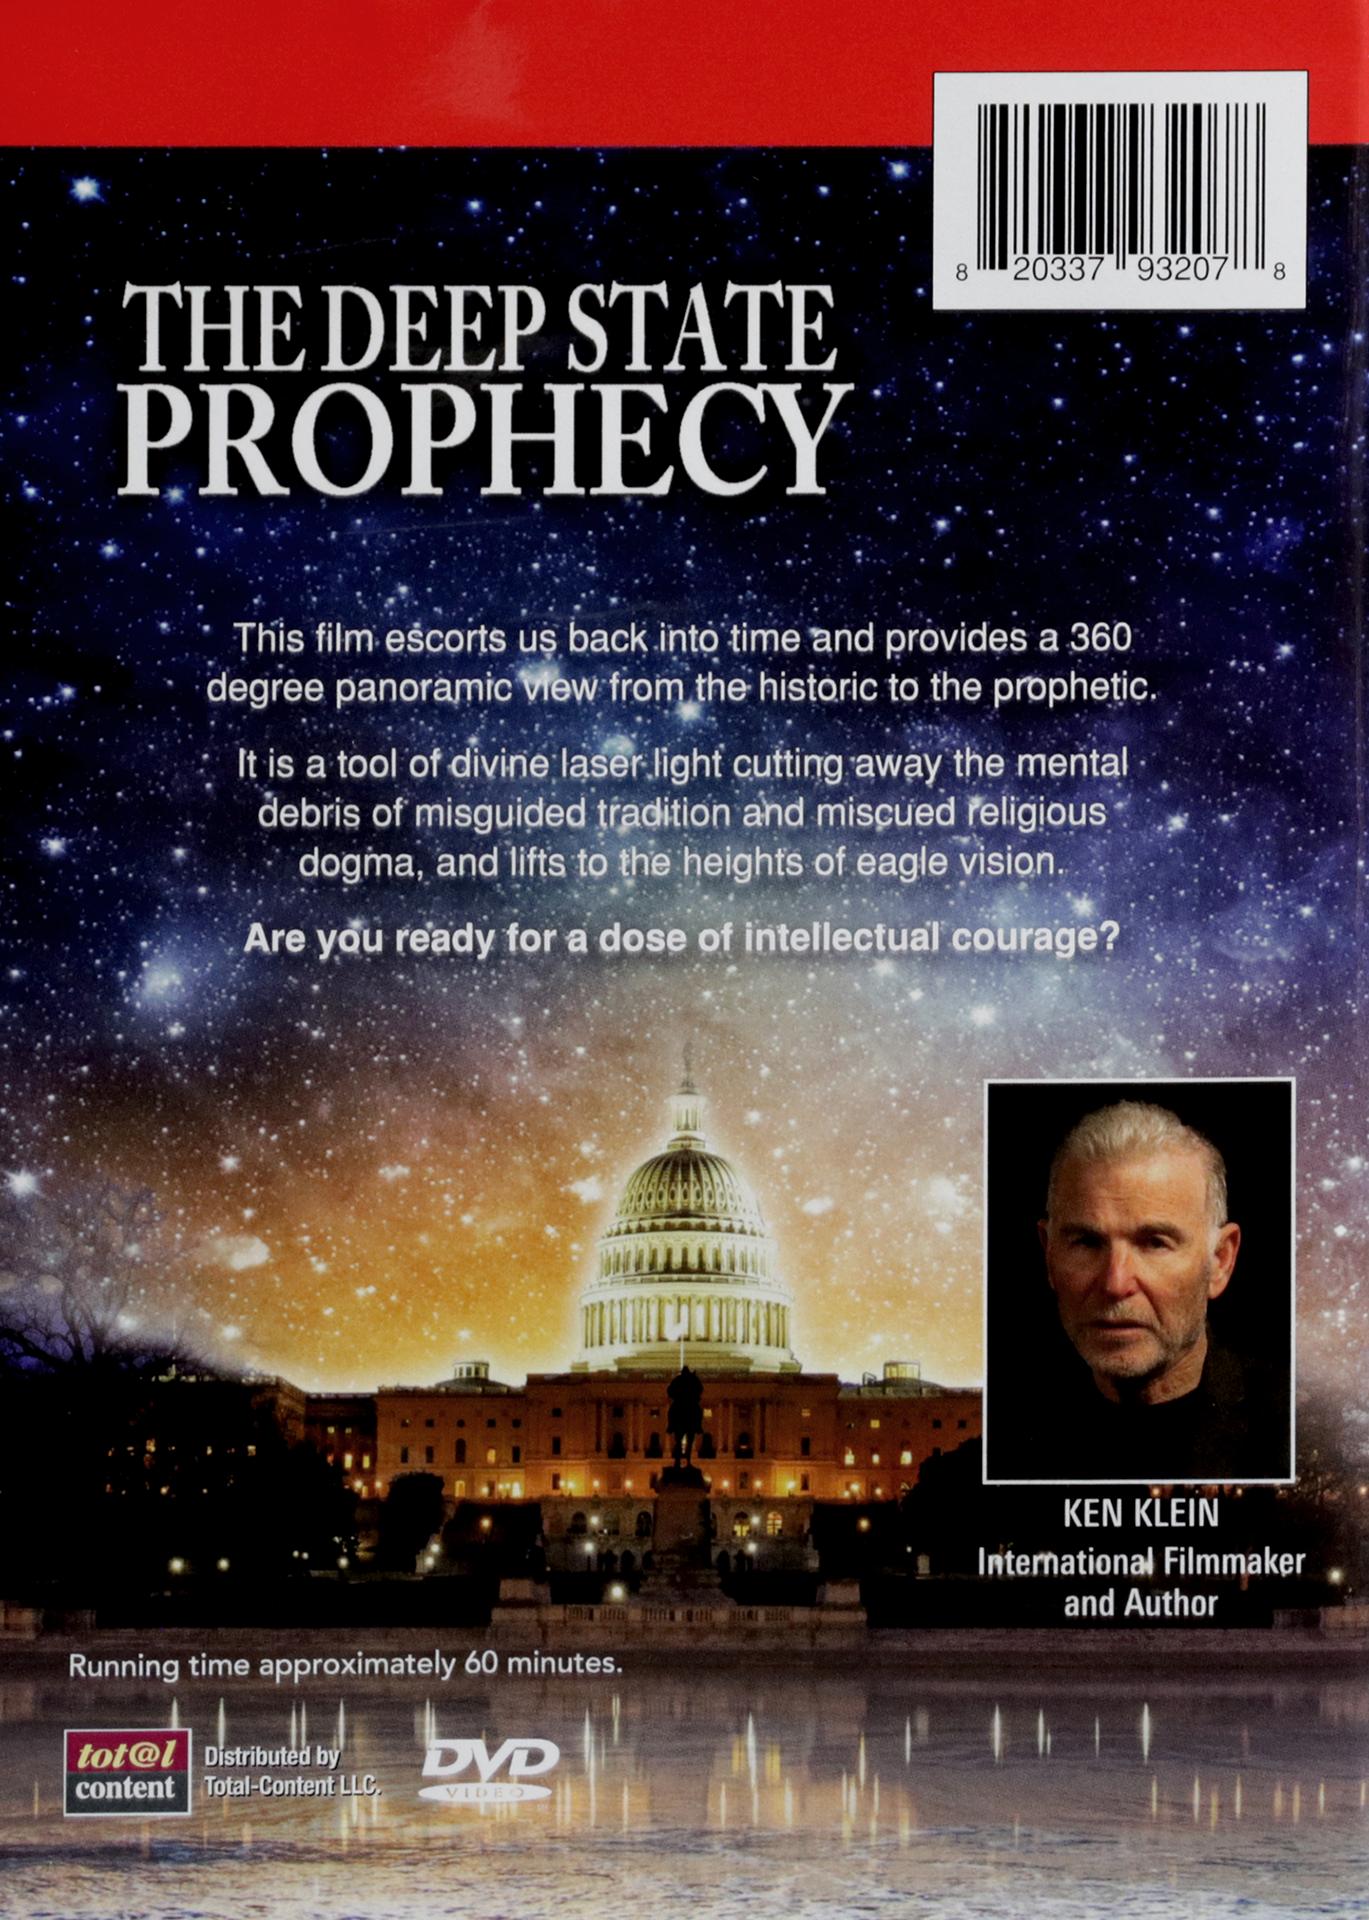 THE DEEP STATE PROPHECY - HamiltonBook.com